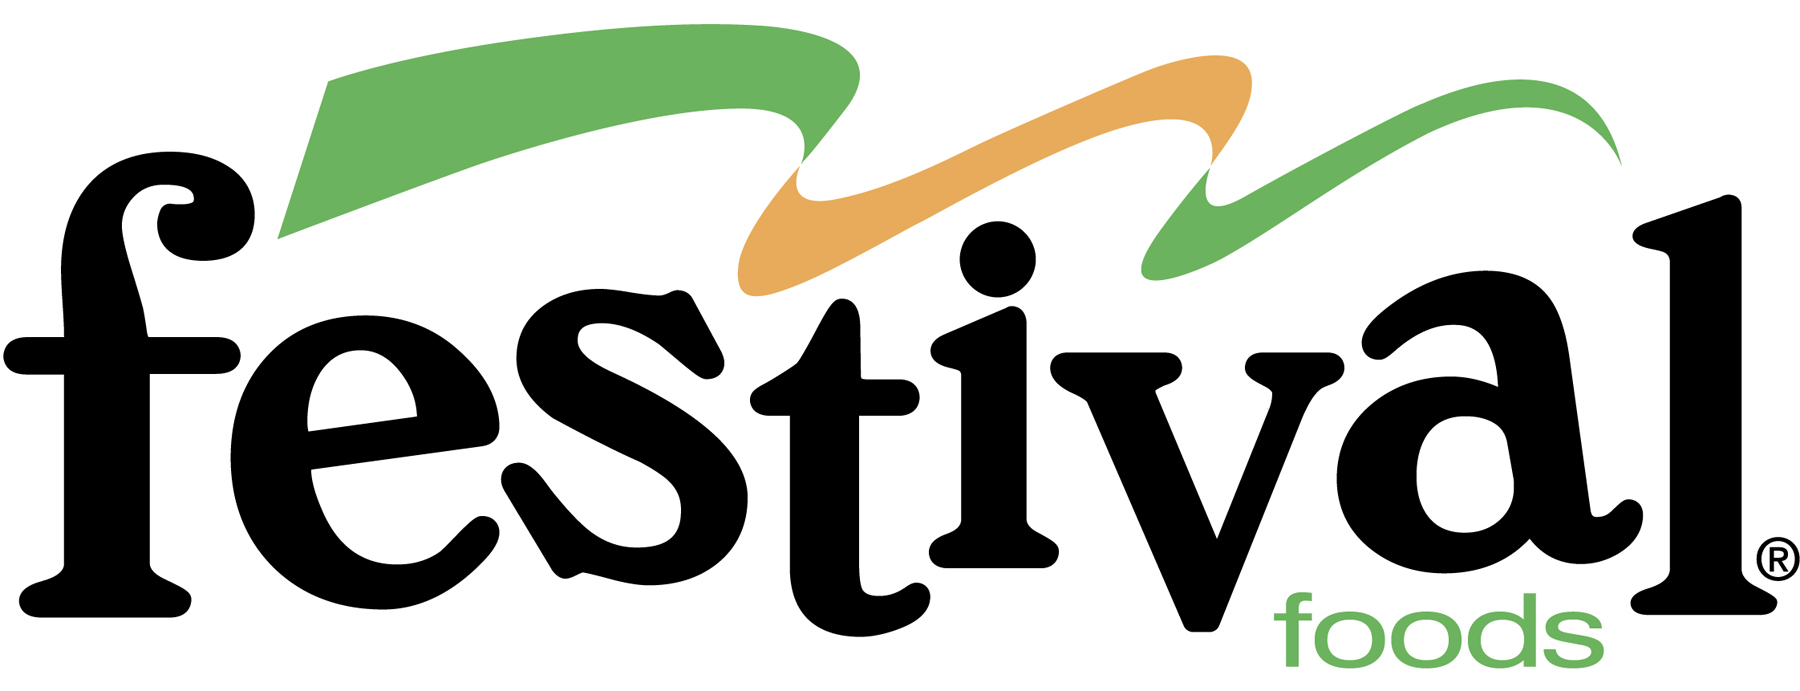 Festival Logo - high resolution jpg format